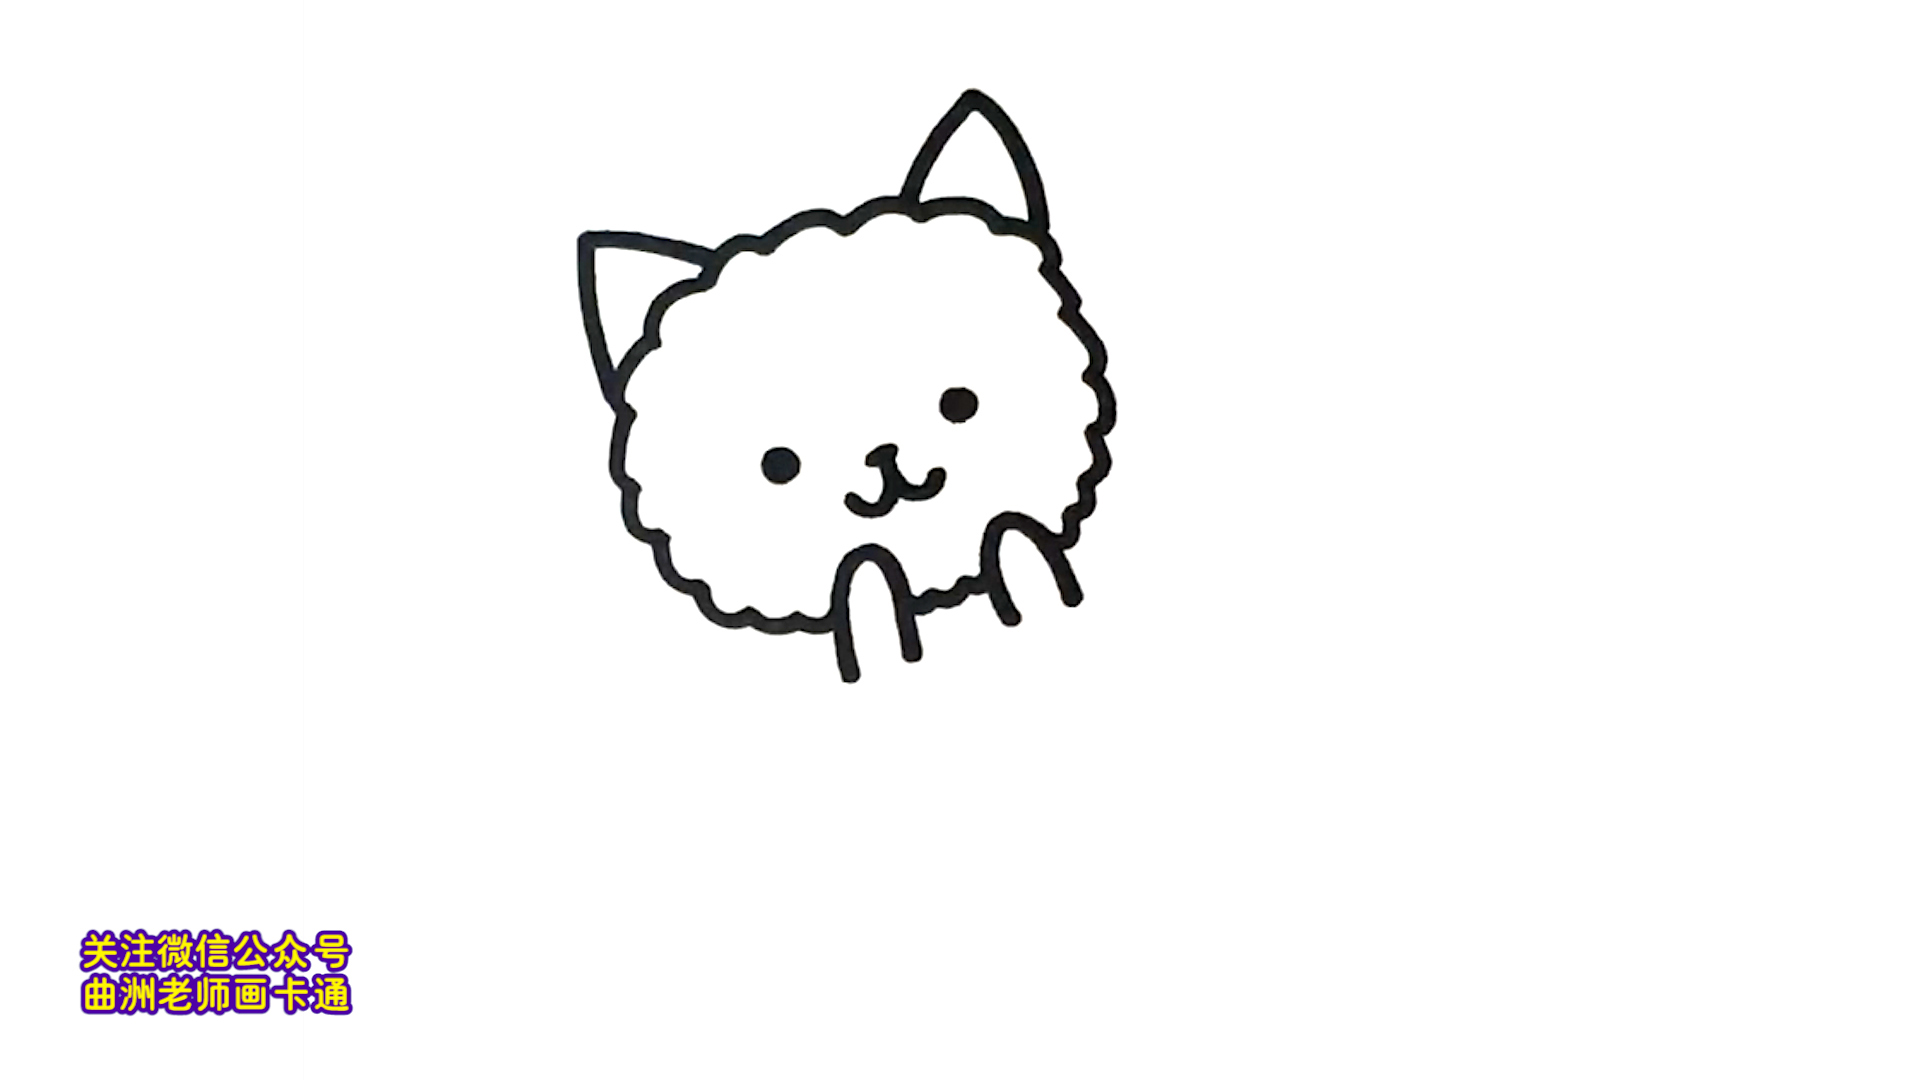 一分钟简笔画:二,三笔画出一只超级可爱的小猫